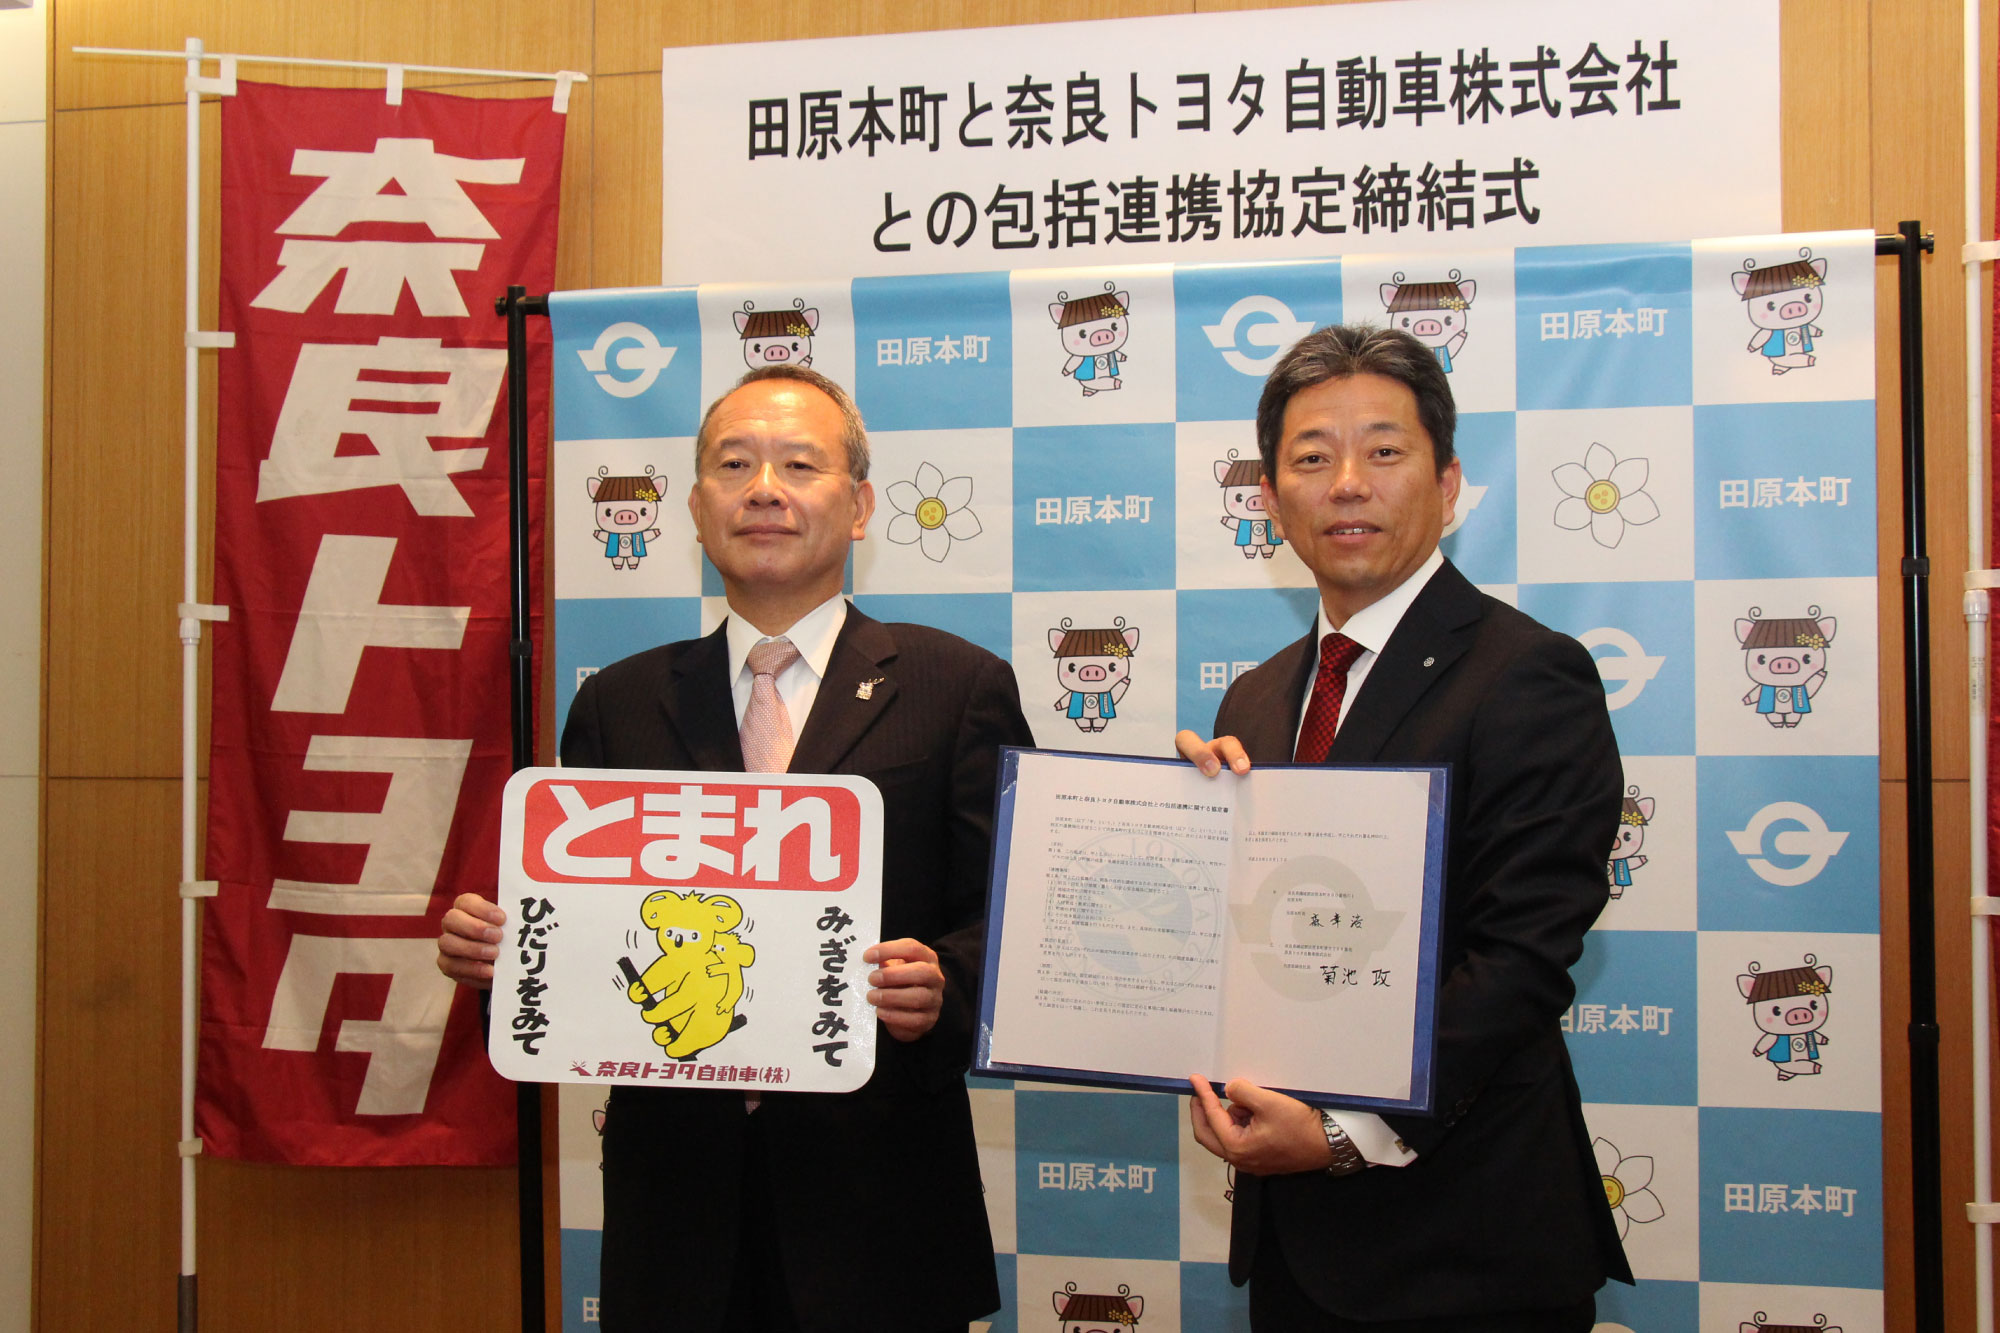 田原本町と奈良トヨタ自動車株式会社との包括連携協定